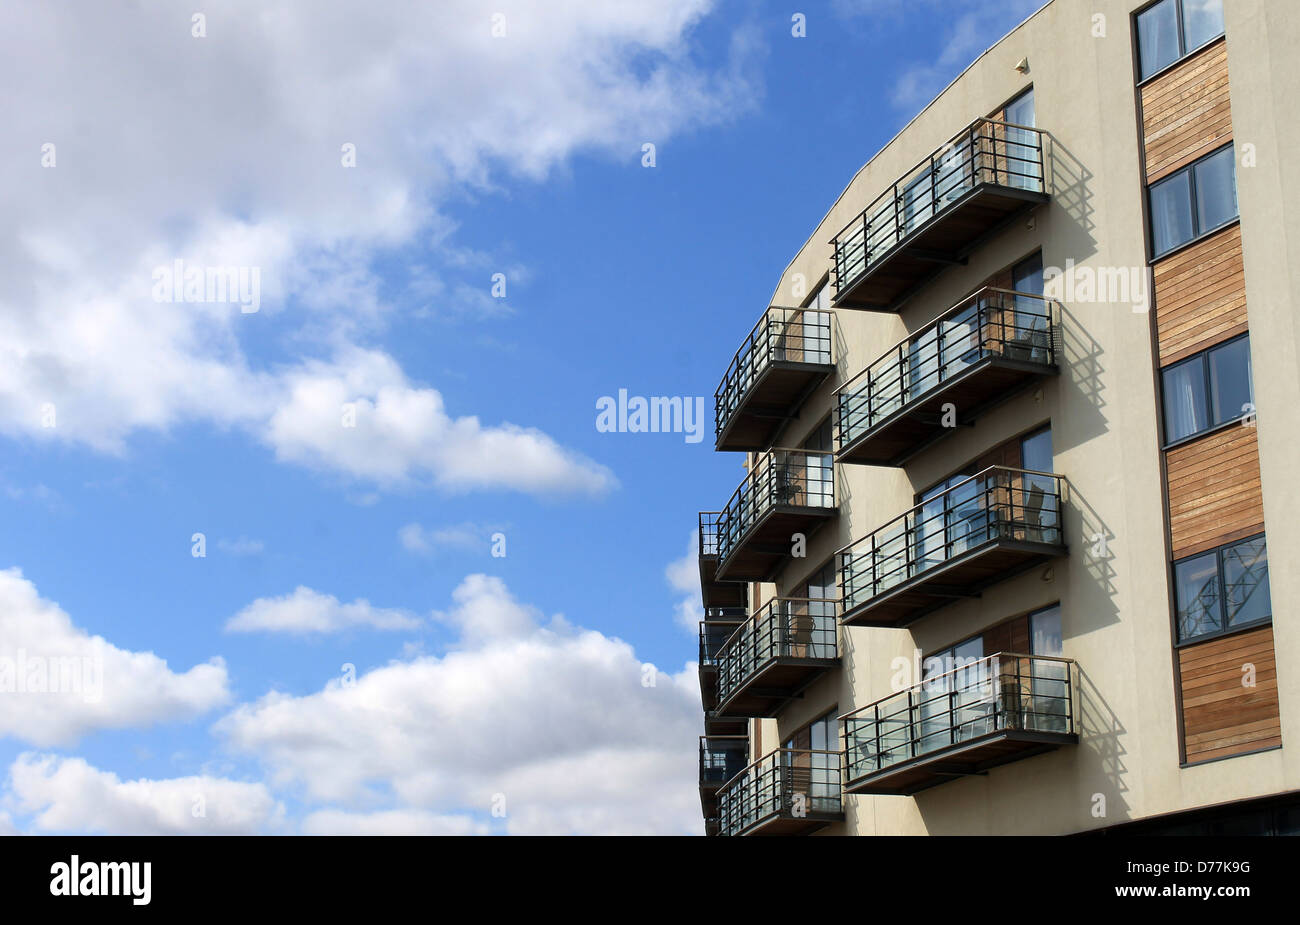 Exterieur der geschwungene modernen Mehrfamilienhaus mit blauem Himmel und Wolkengebilde Hintergrund. Stockfoto